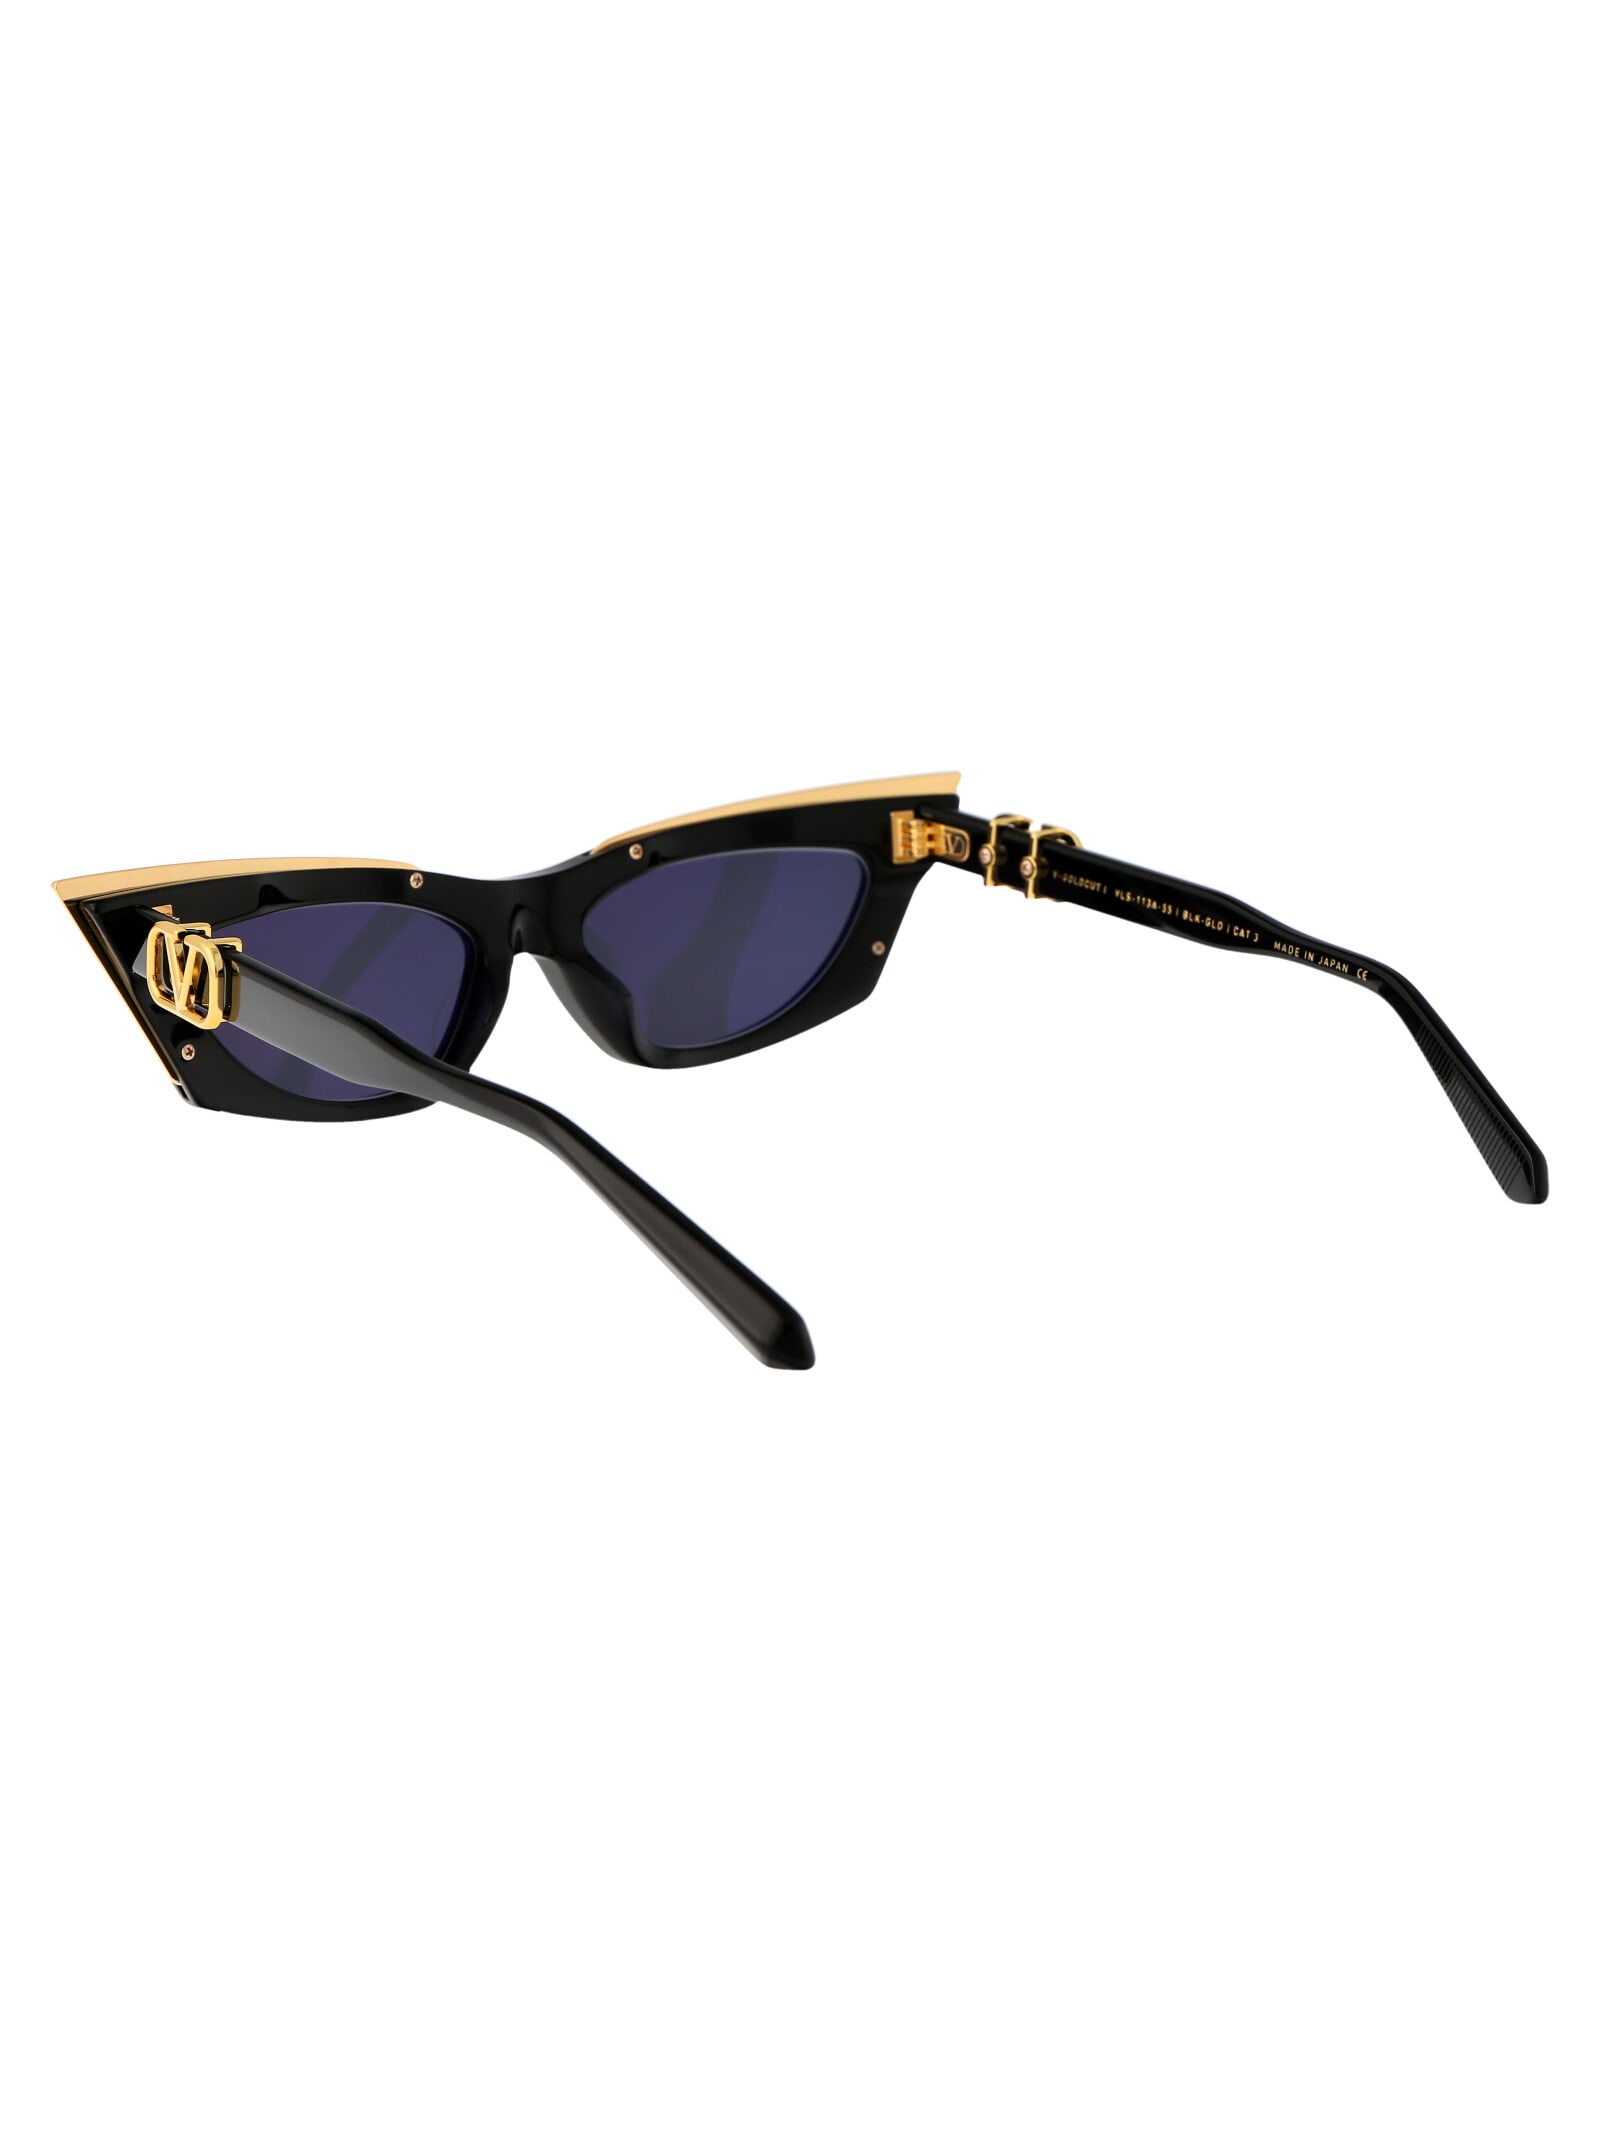 Valentino Women's V-Goldcut I Sunglasses